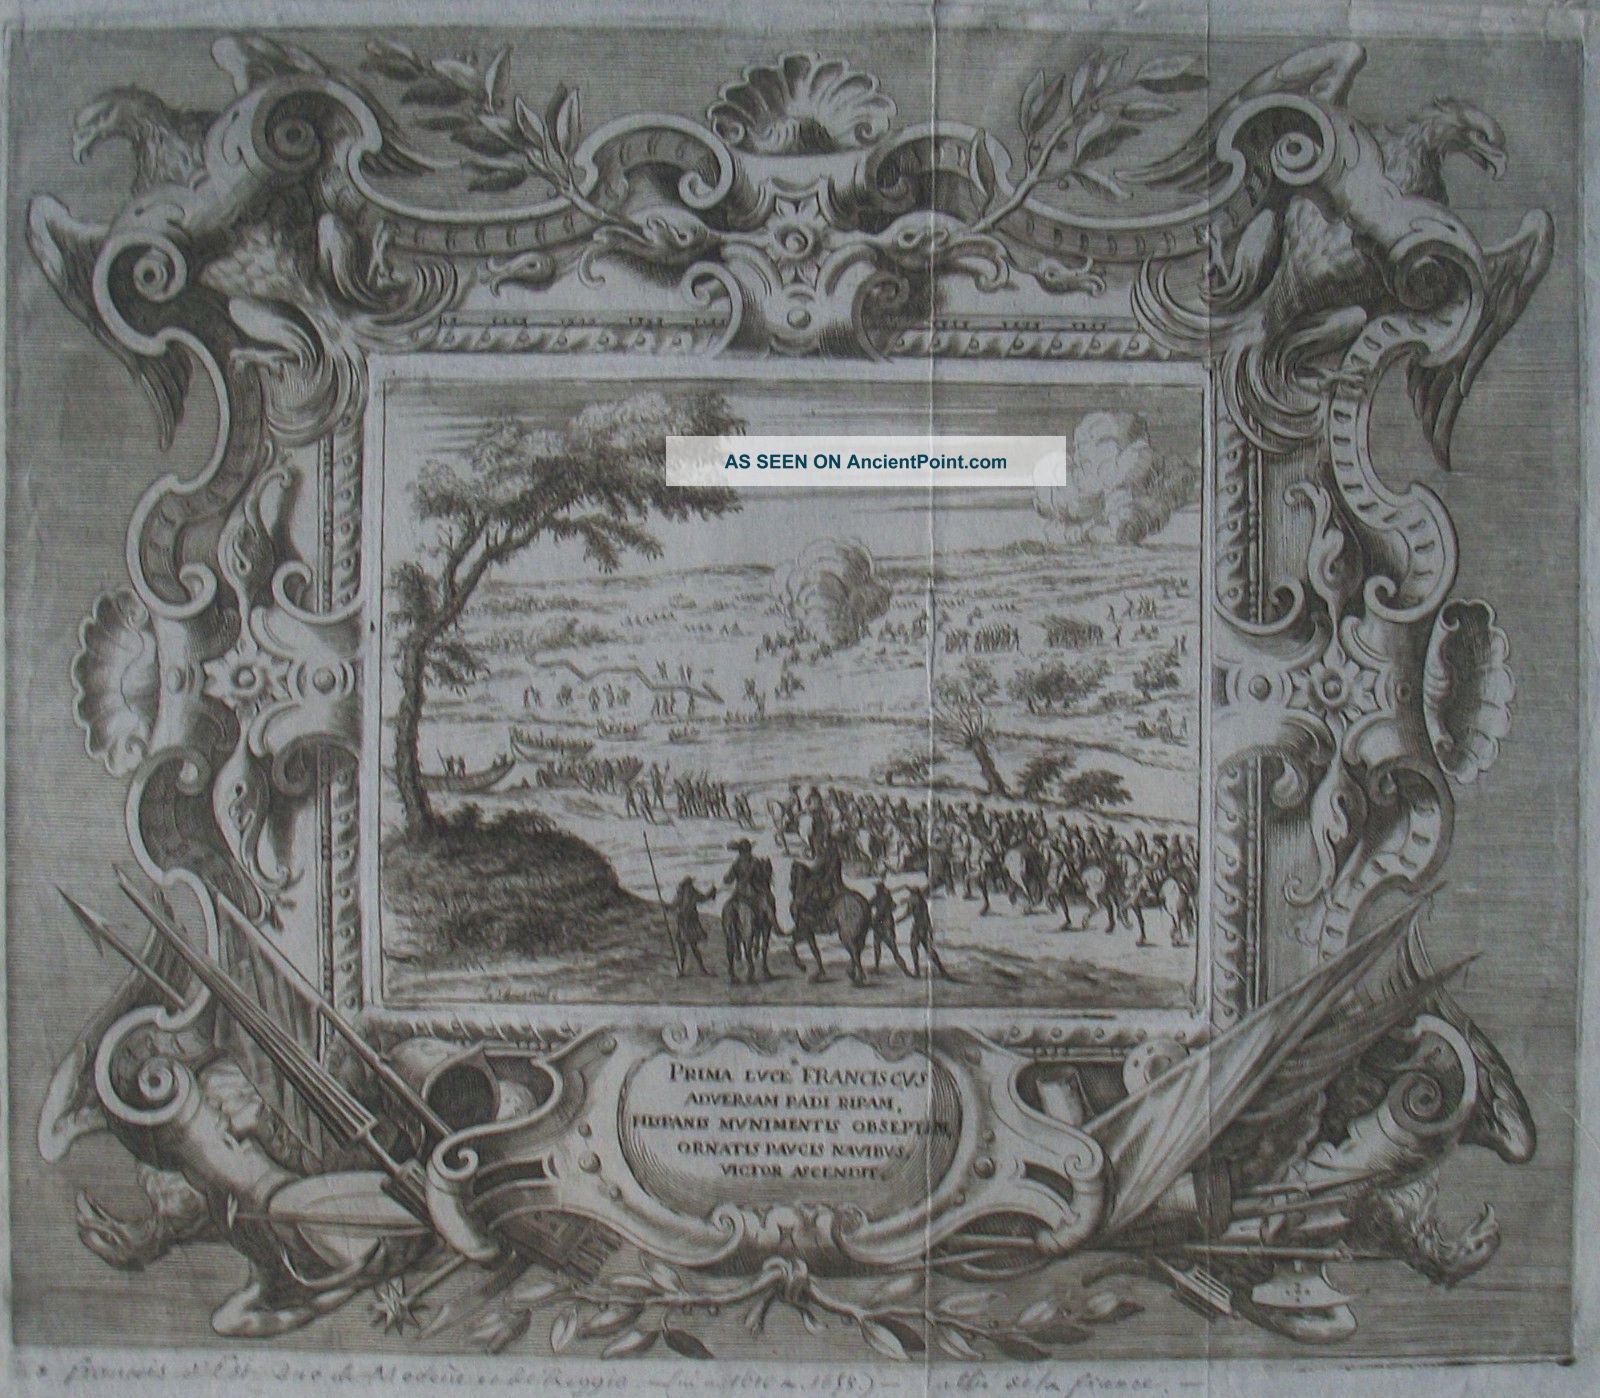 Fançois D ' Est Duc De Modène Et De Reggio - Bartholomé FÉnice - 1655 Near Eastern photo